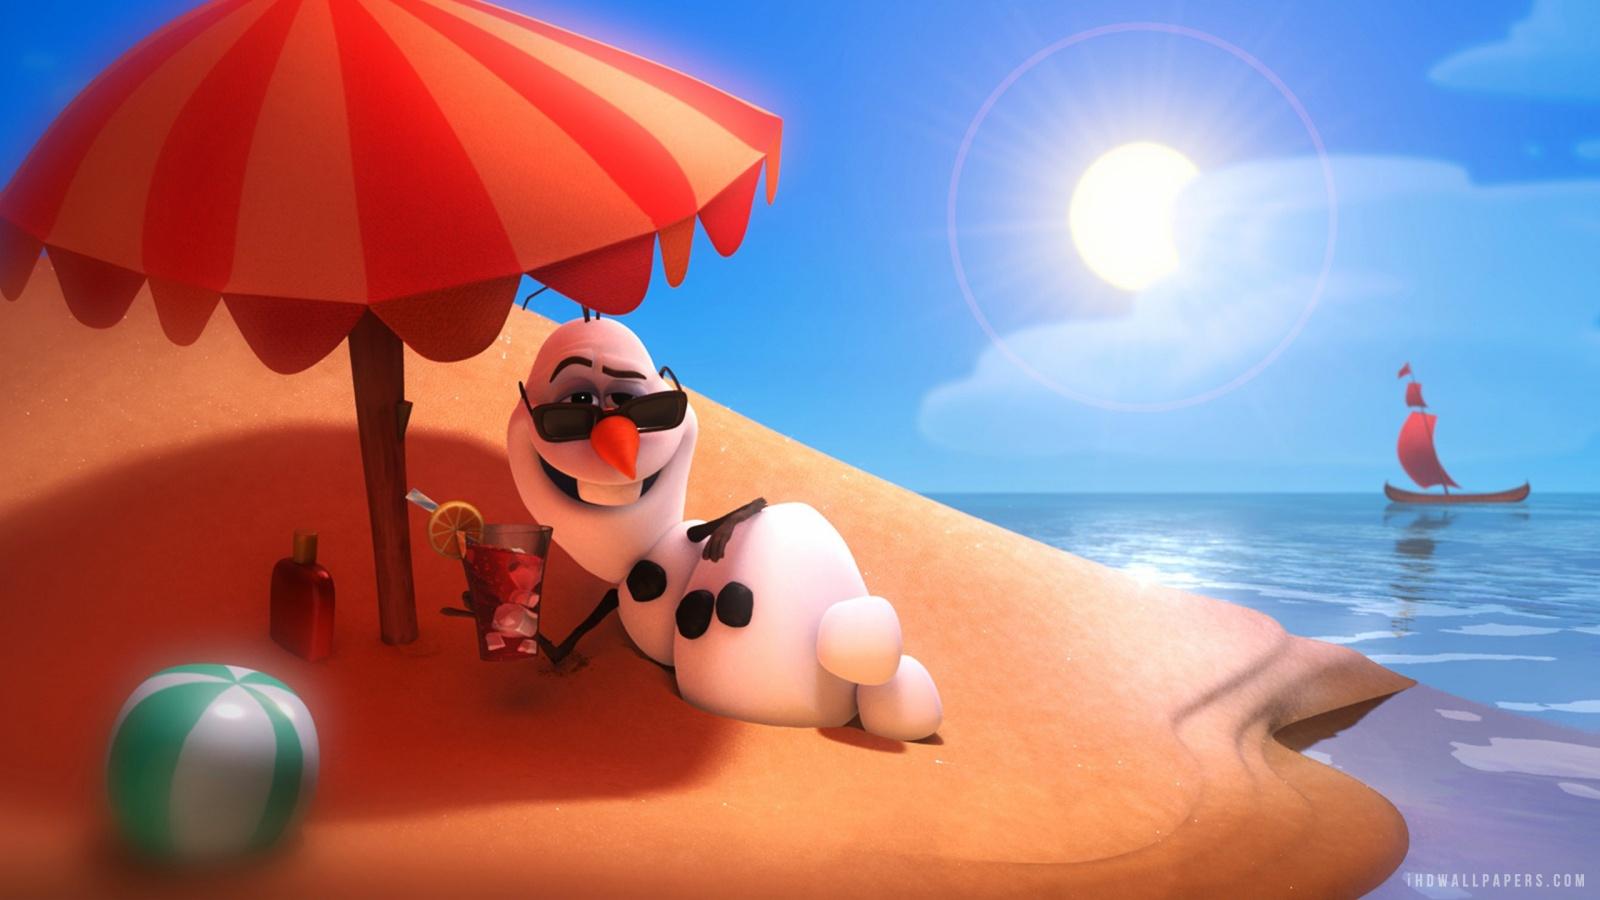 Free download Disney Frozen Olaf HD Wallpaper iHD Wallpaper